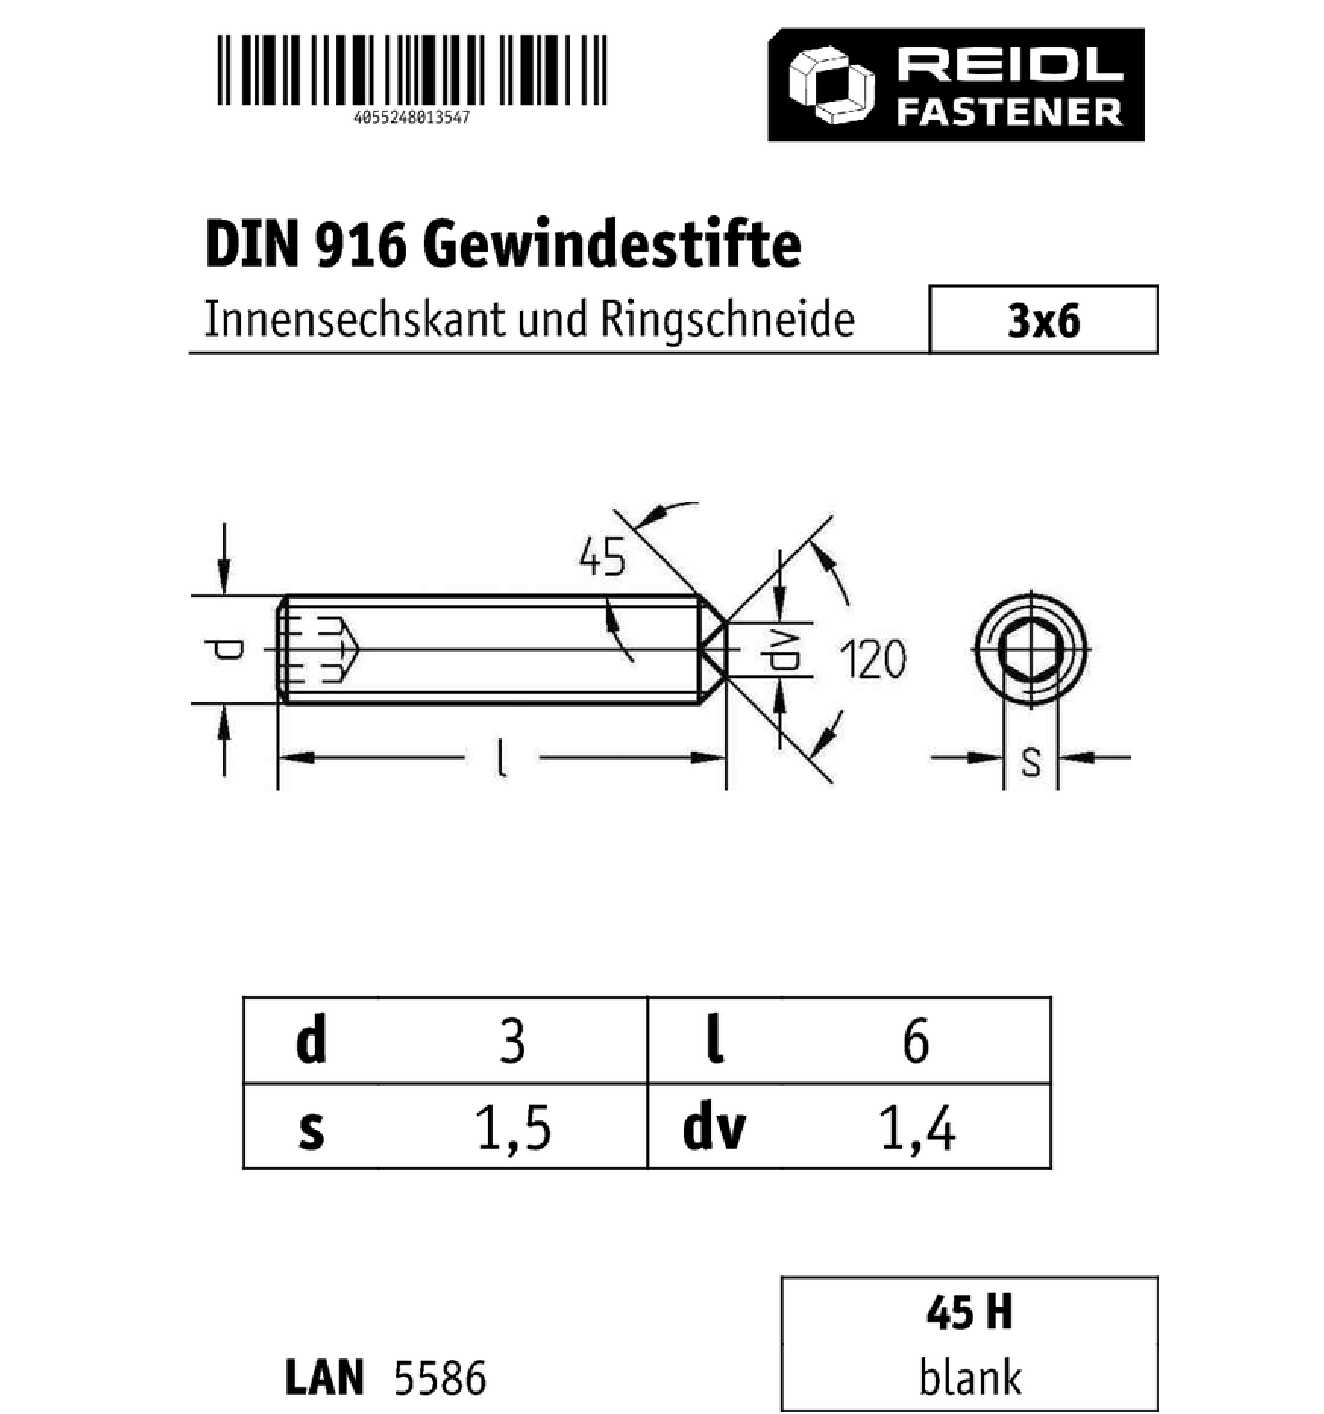 M3 DIN916 45H Gewindestifte Ringschneide Innensechskant Madenschrauben blank M3x 